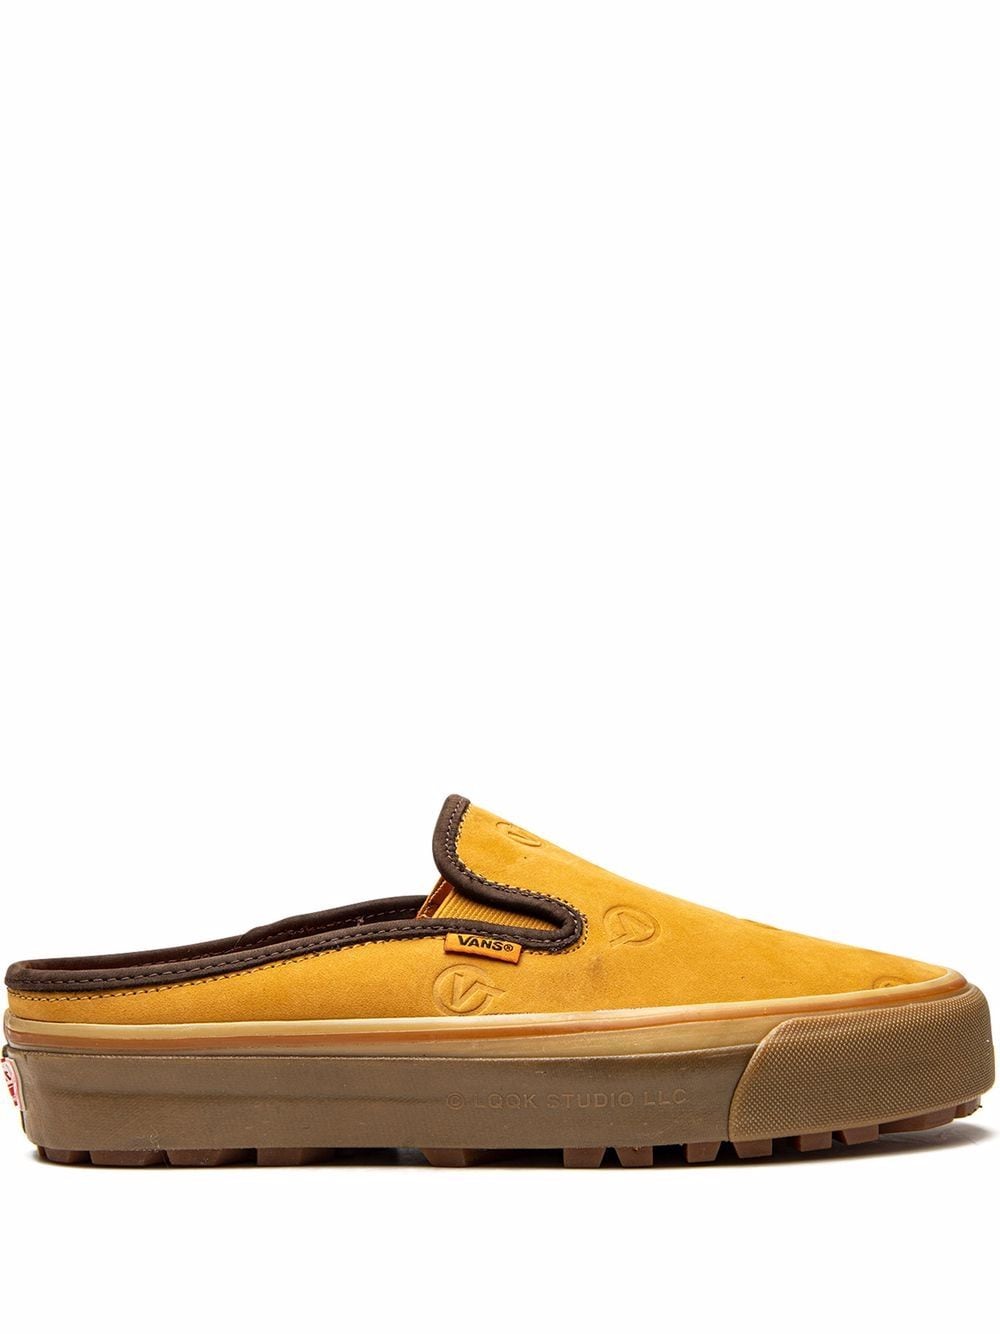 Vans x LQQK Studio Og Mule Lx sneakers - Yellow von Vans